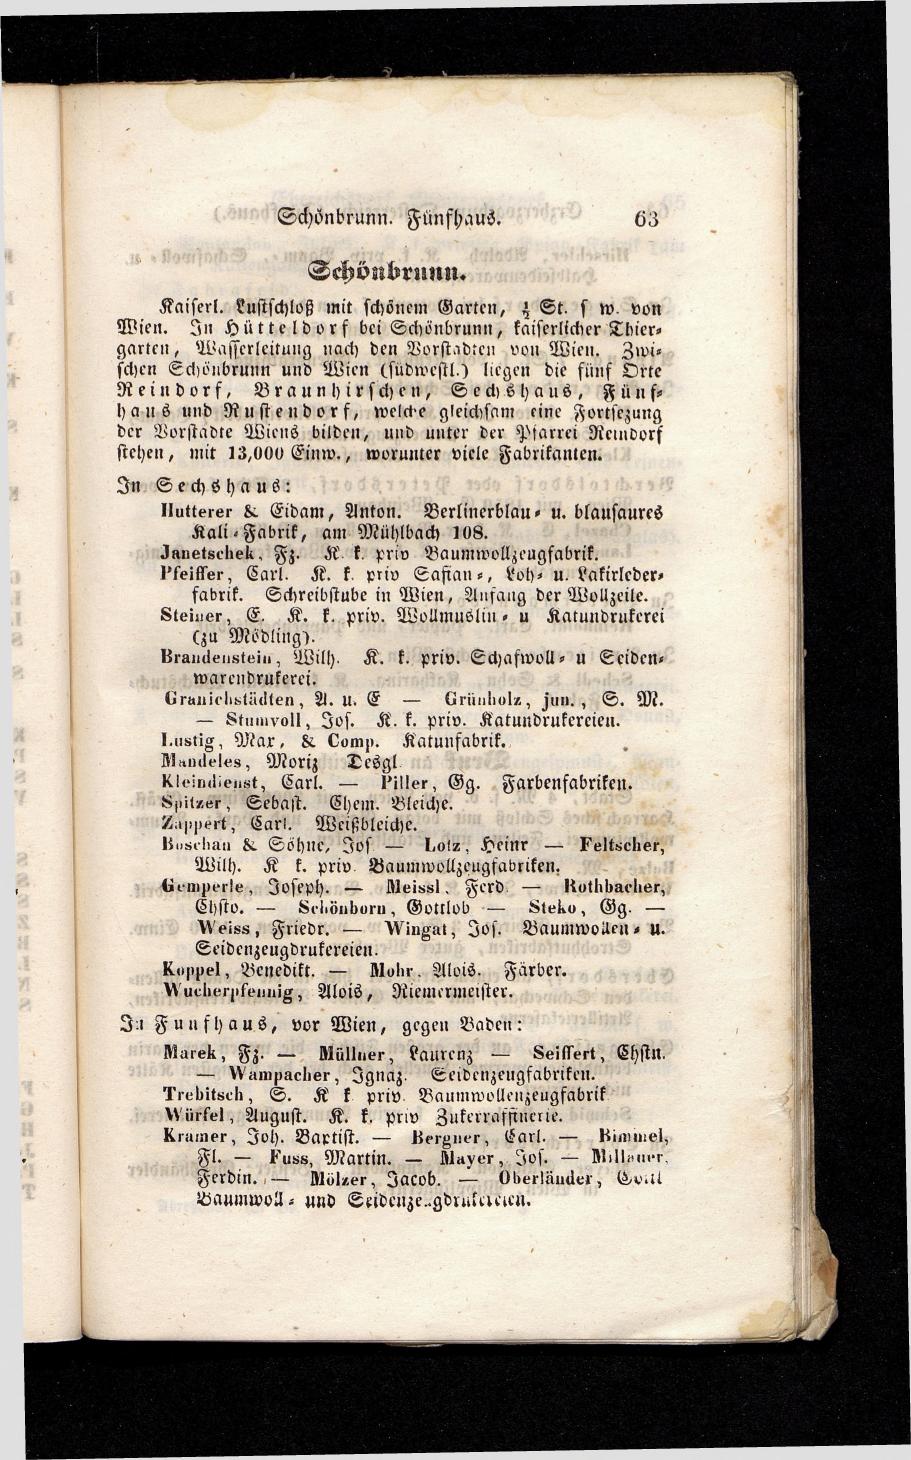 Grosses Adressbuch der Kaufleute. No. 13. Oesterreich ober u. unter der Enns 1844 - Seite 67